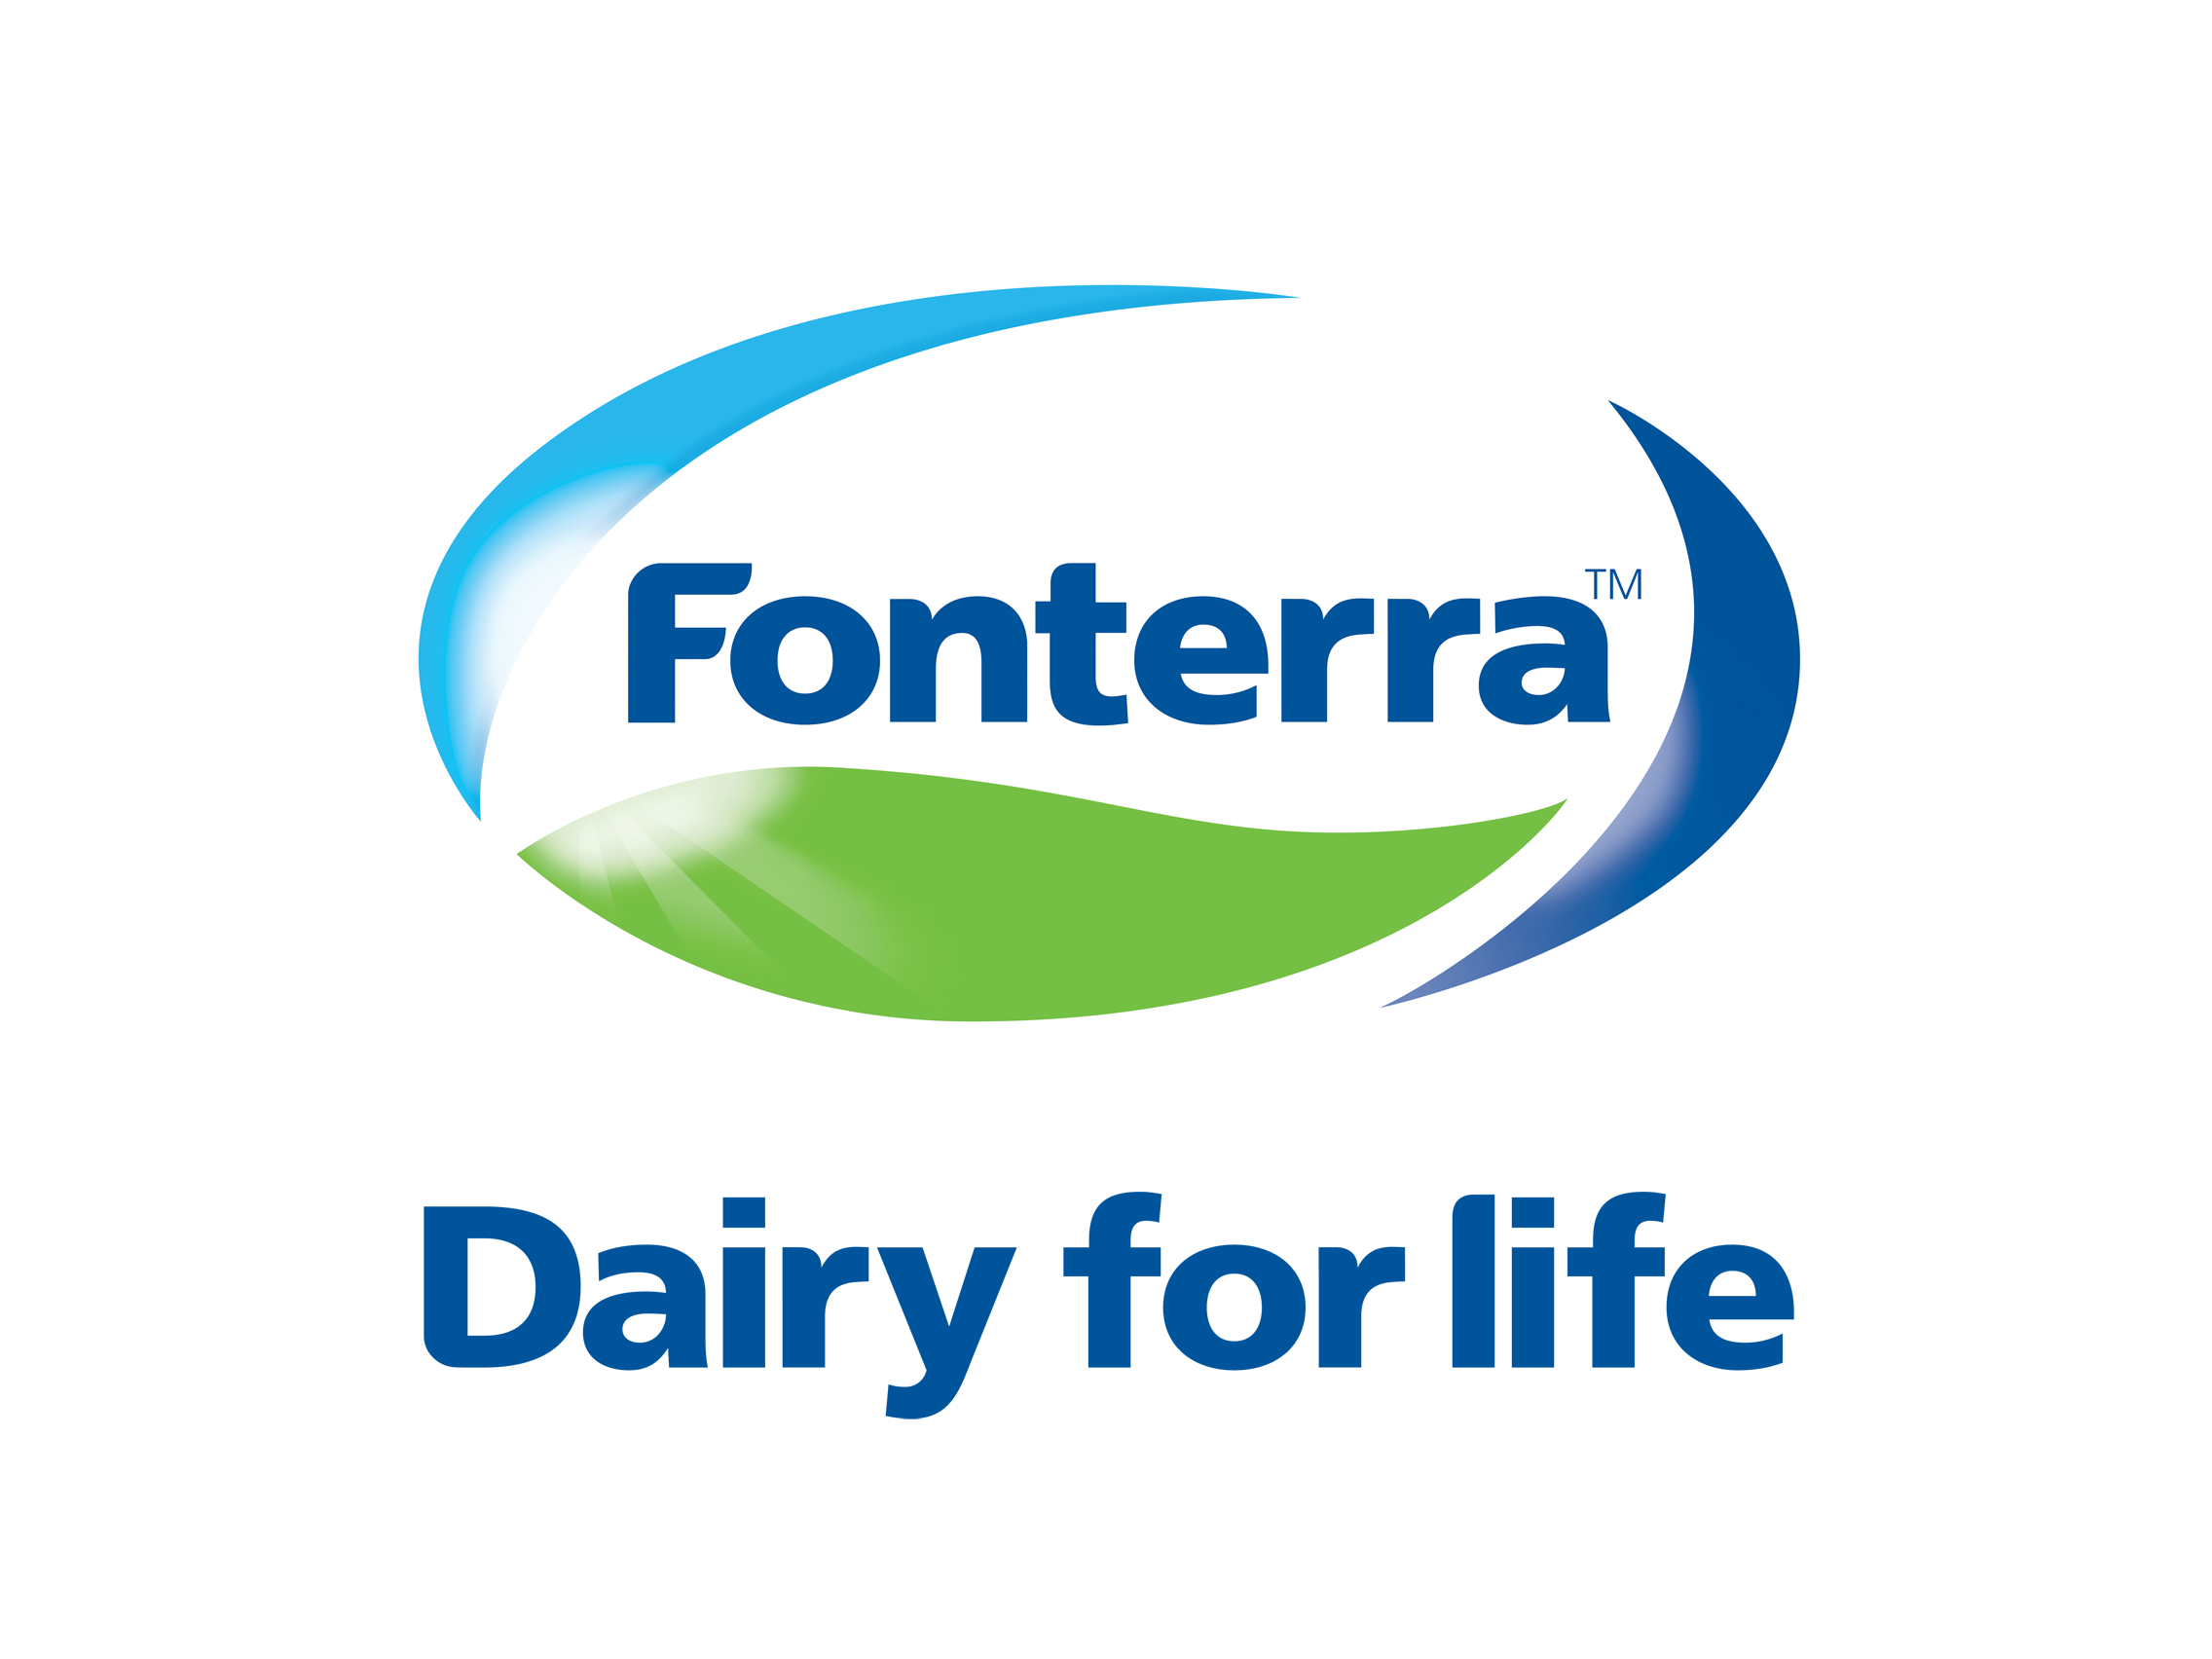 Fonterrra company logo